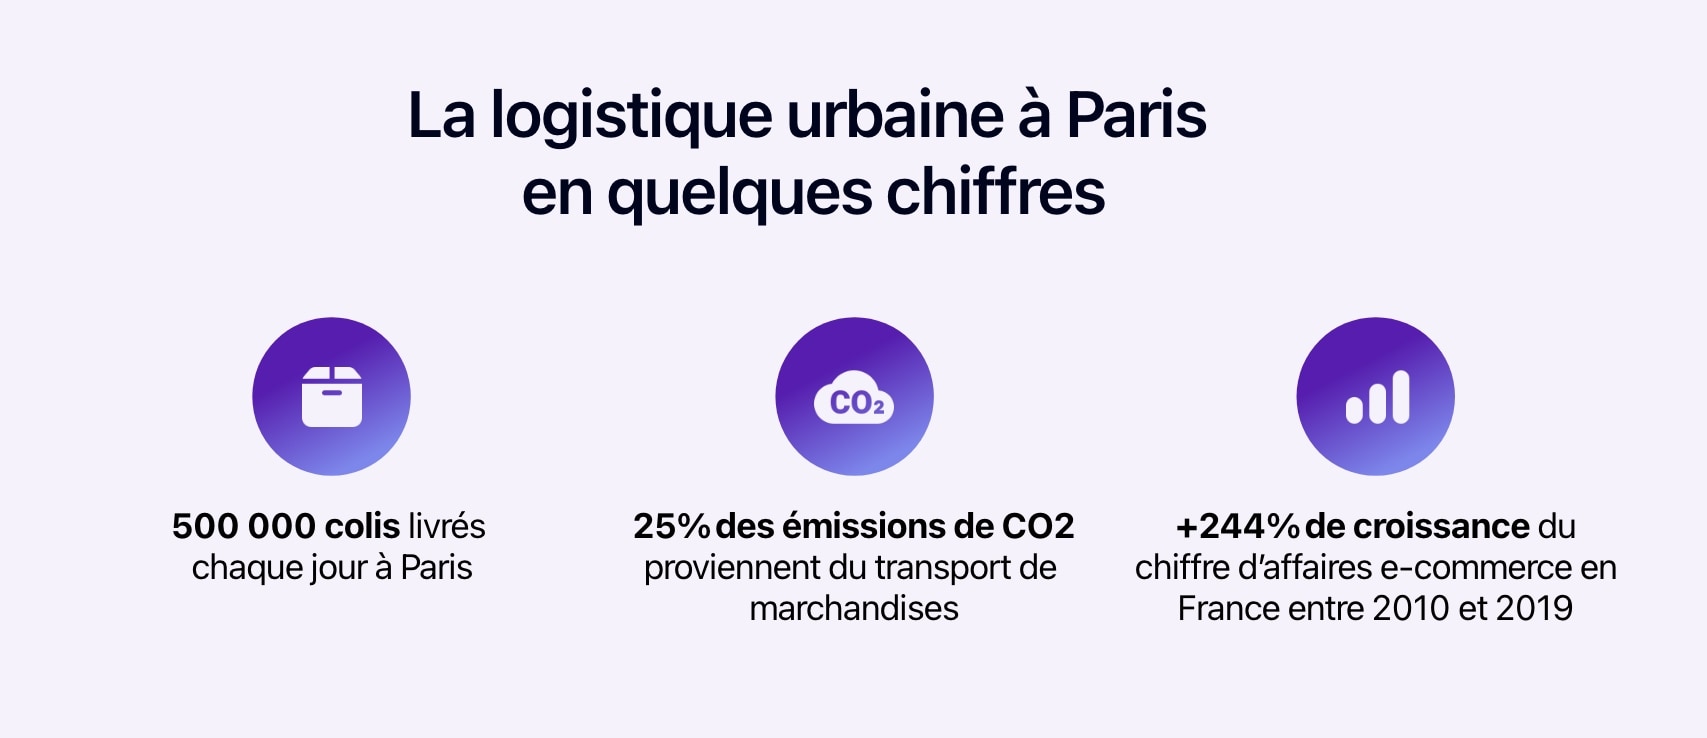 Schéma présentant la logistique urbaine à Paris en quelques chiffres.